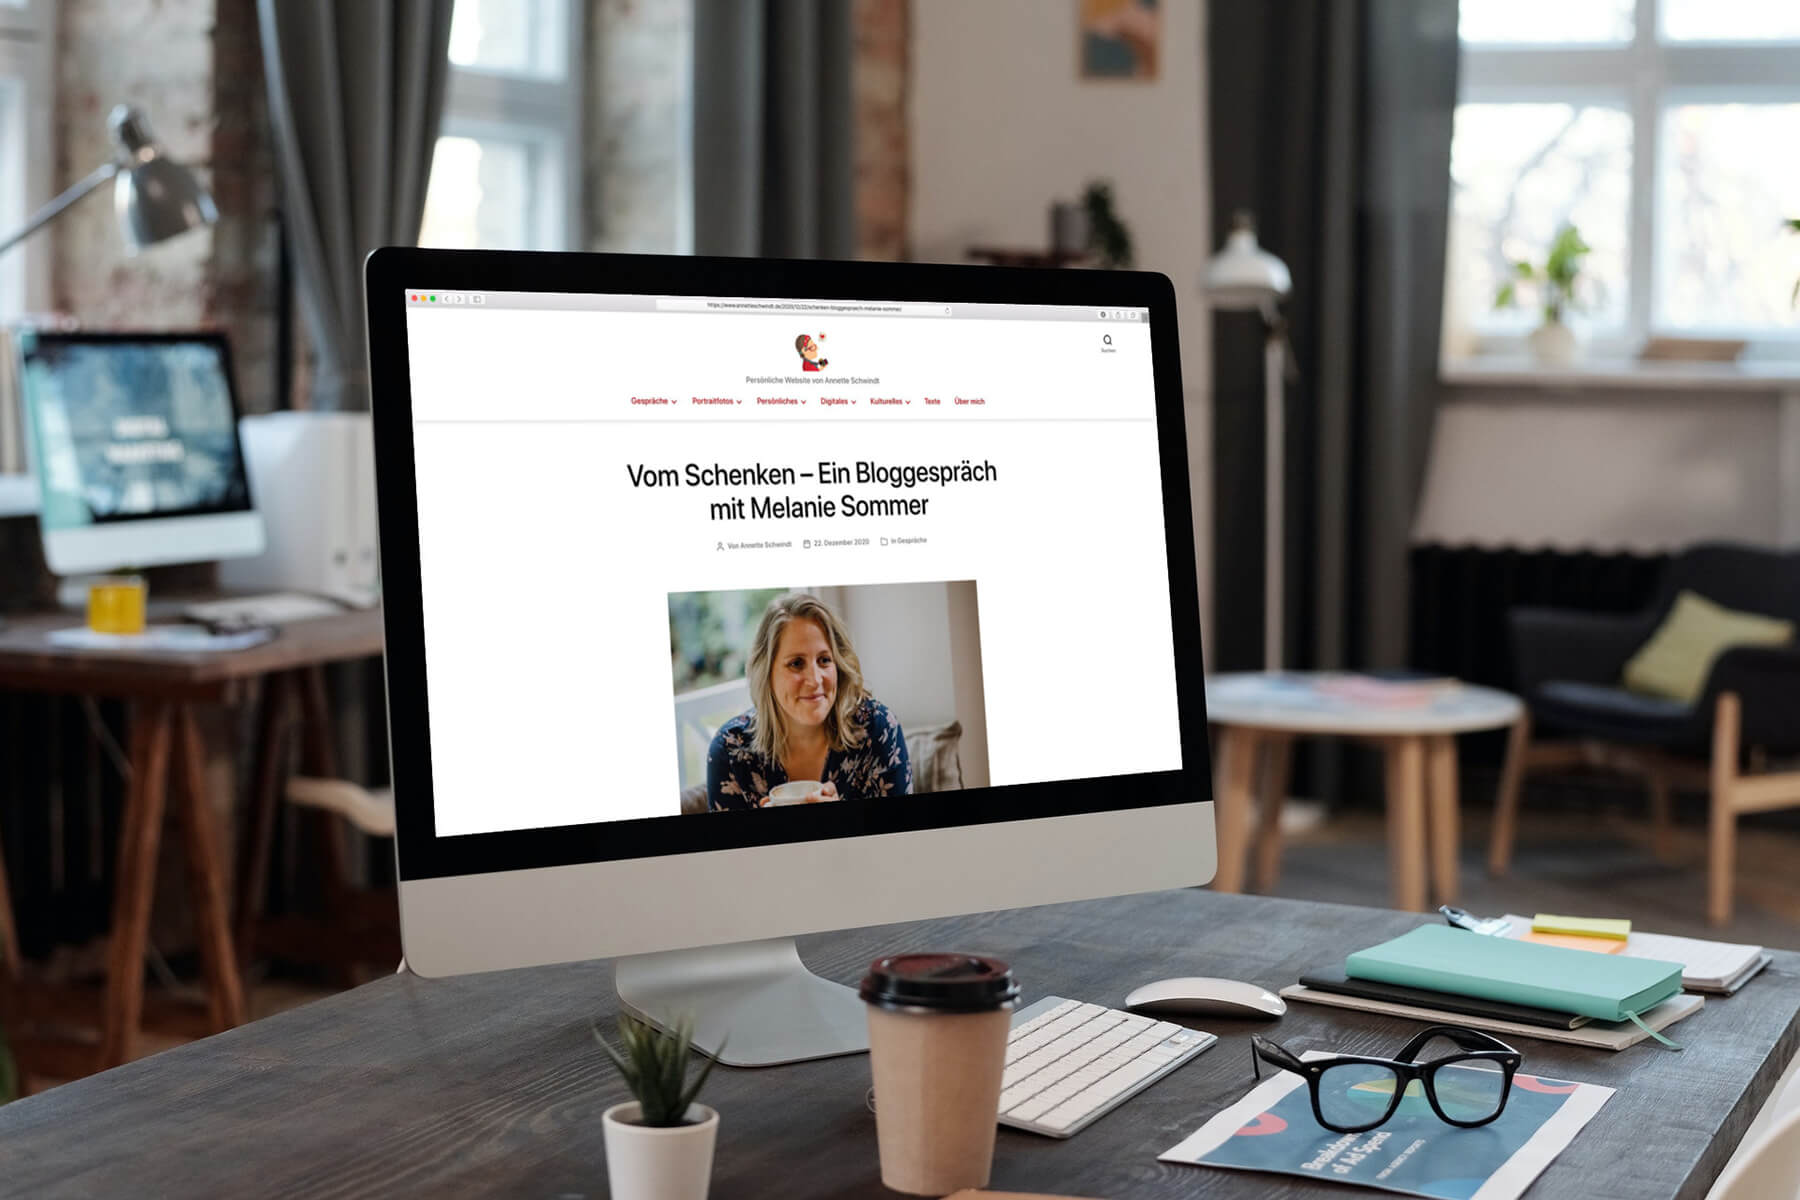 iMac mit Internetseite Bloggespräche von Annette Schwindt – Bloggespräch mit Melanie Sommer übers Schenken